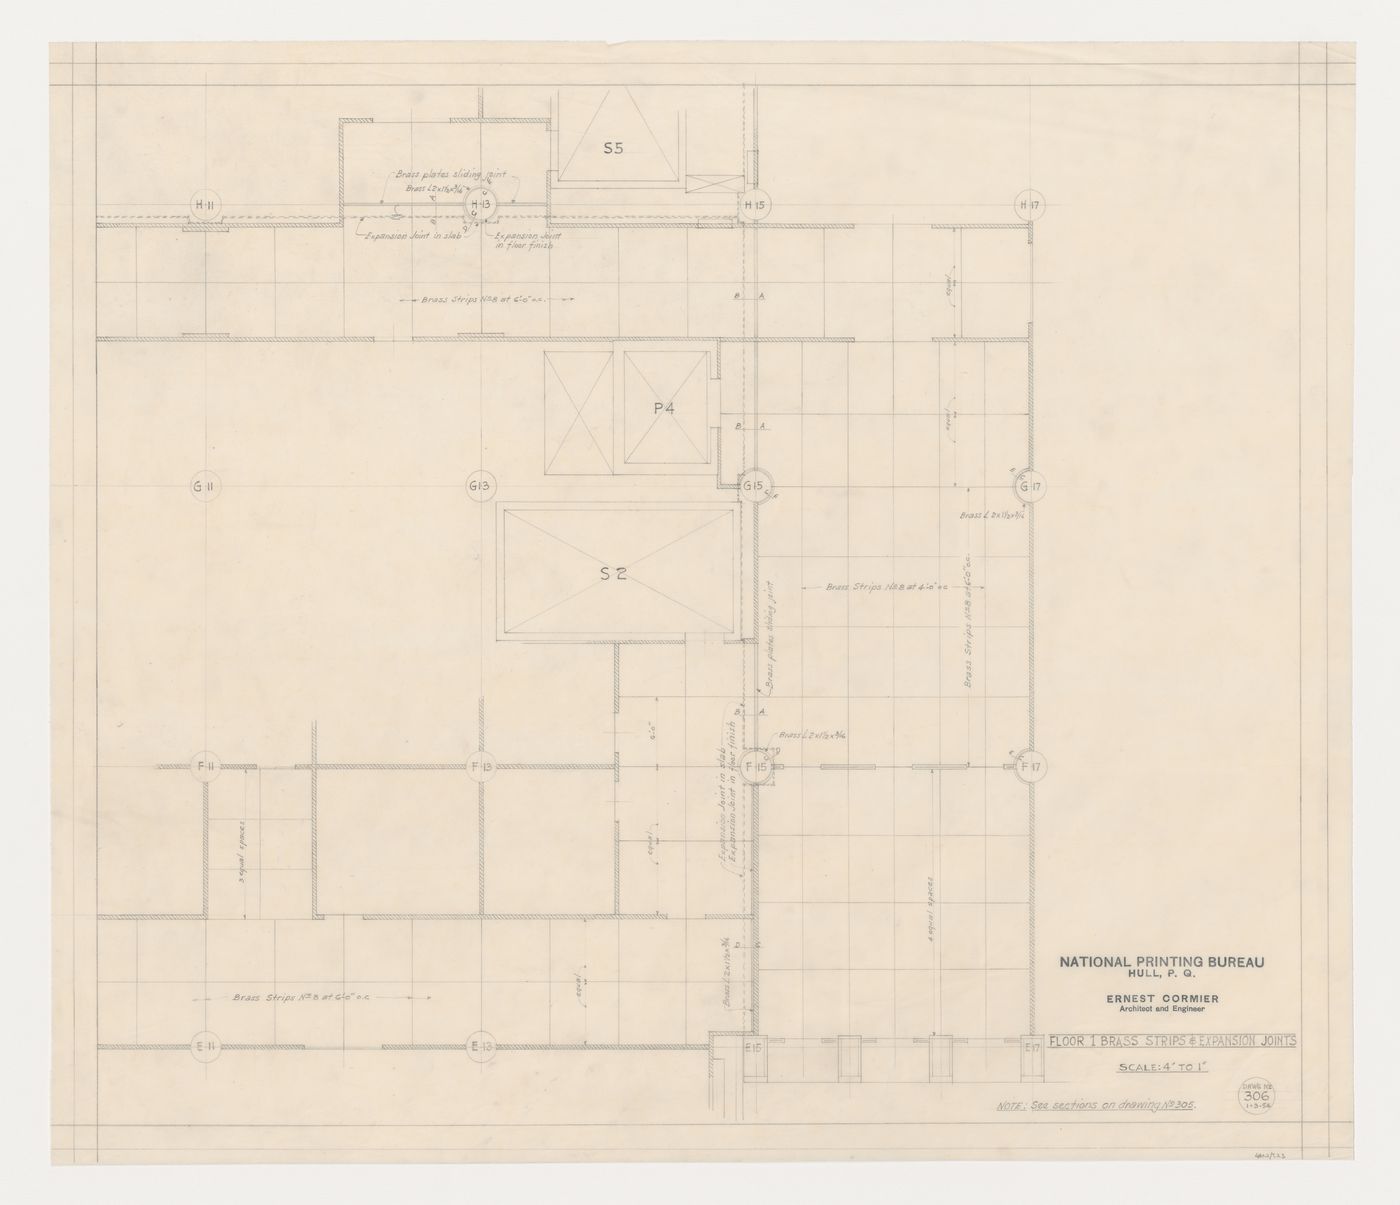 Plan du plancher de l'étage 1 : bandes de laiton et joints de dilatation, Imprimerie Nationale du Canada, Hull, Québec, Canada